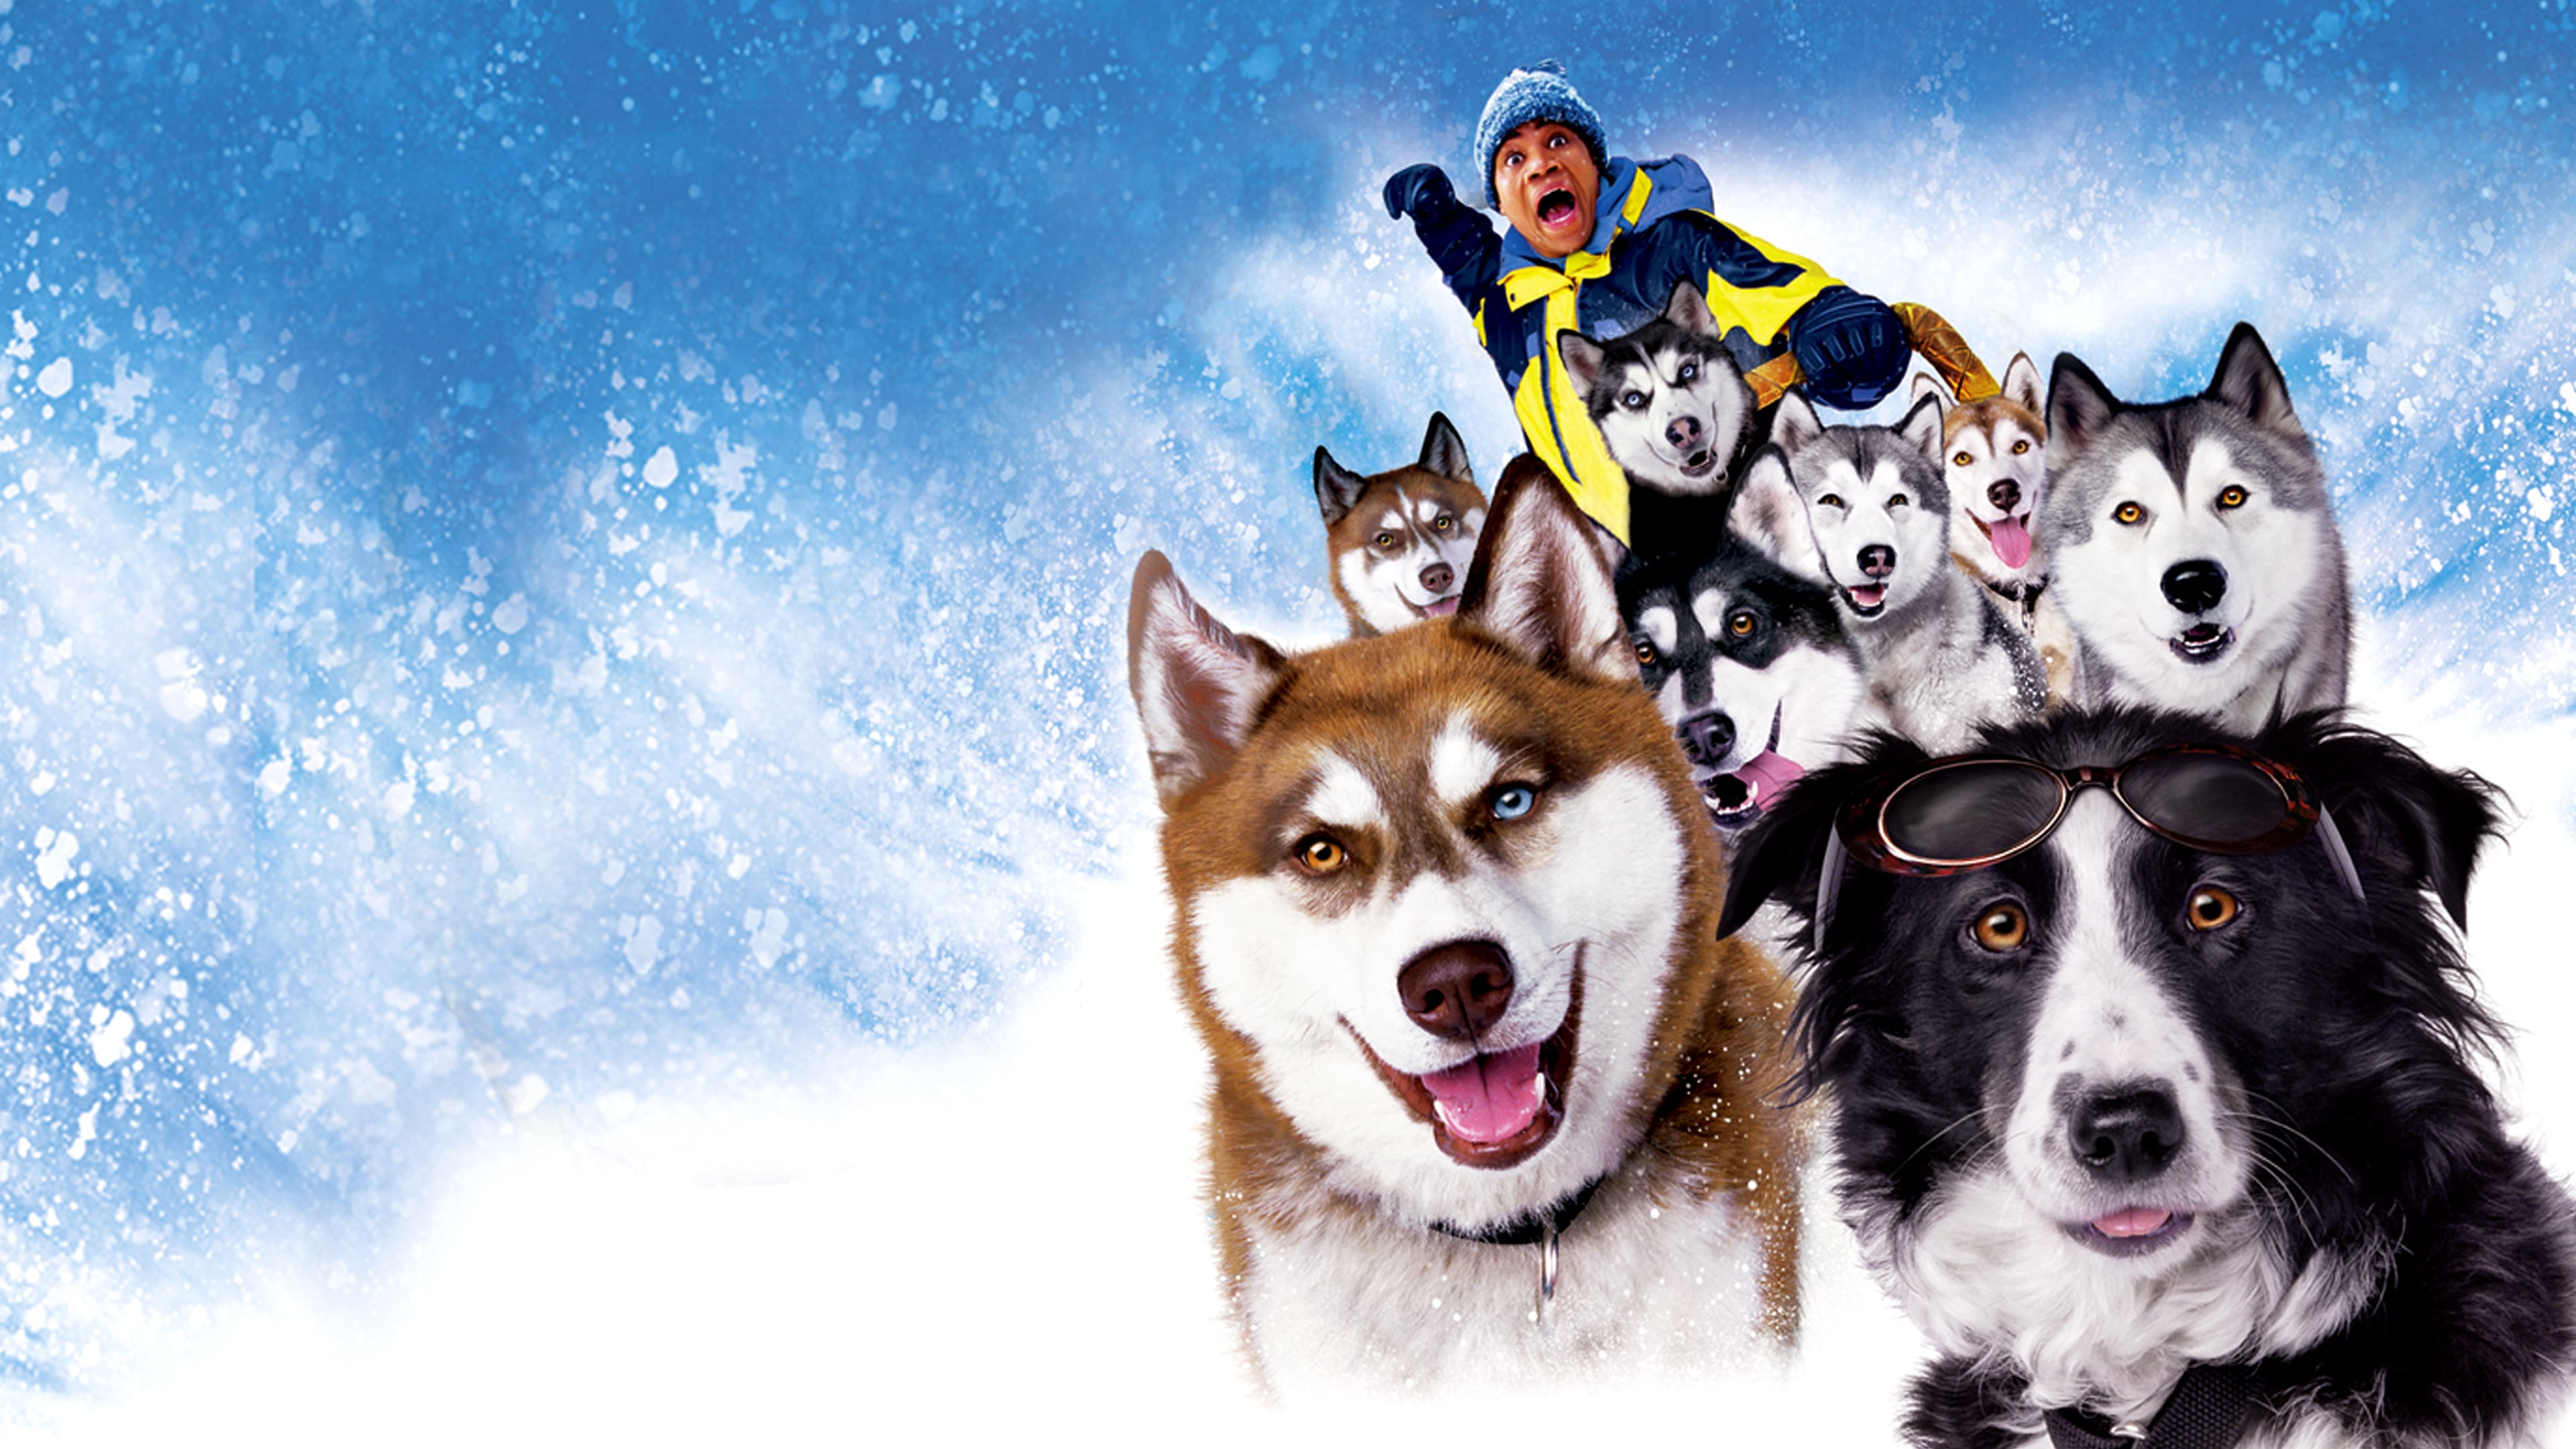 Snow Dogs 2002 123movies